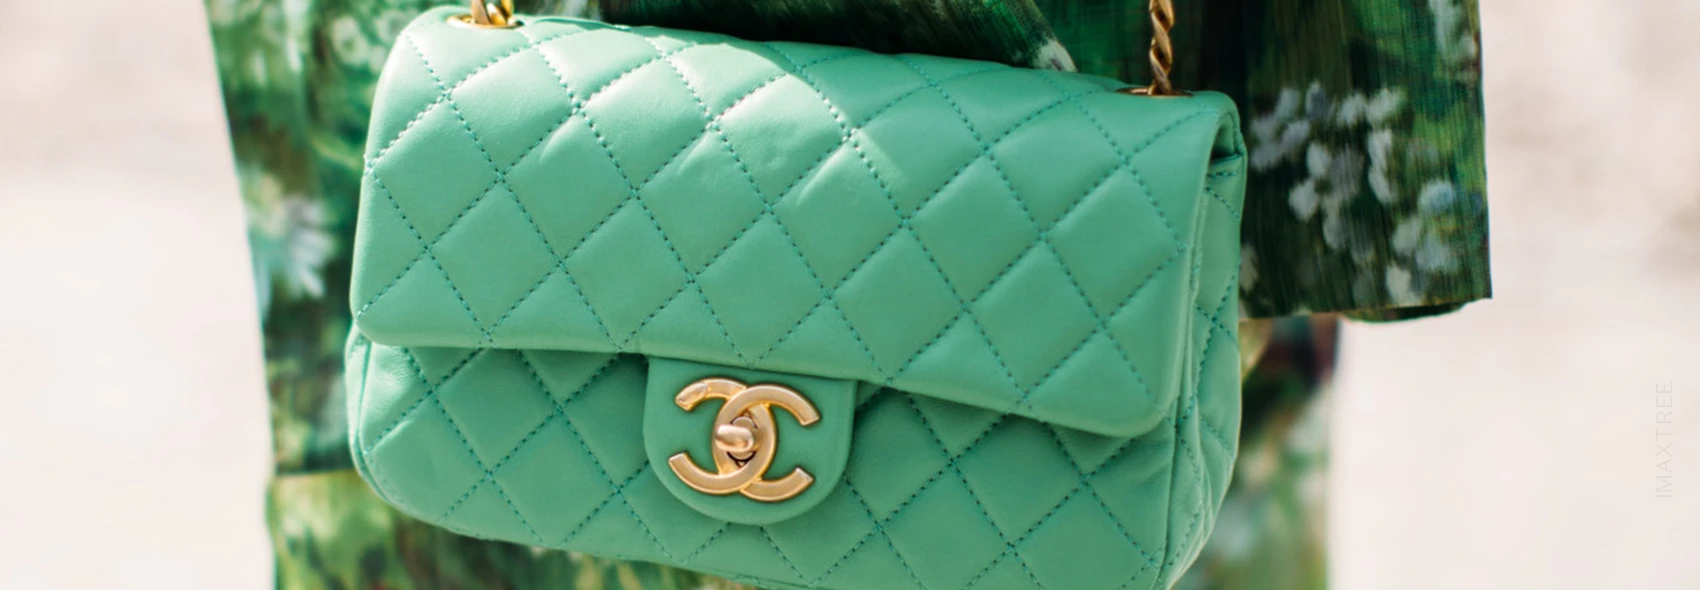 Die Chanel Classic Flap Bag: Das sollten Sie beim Kauf beachten